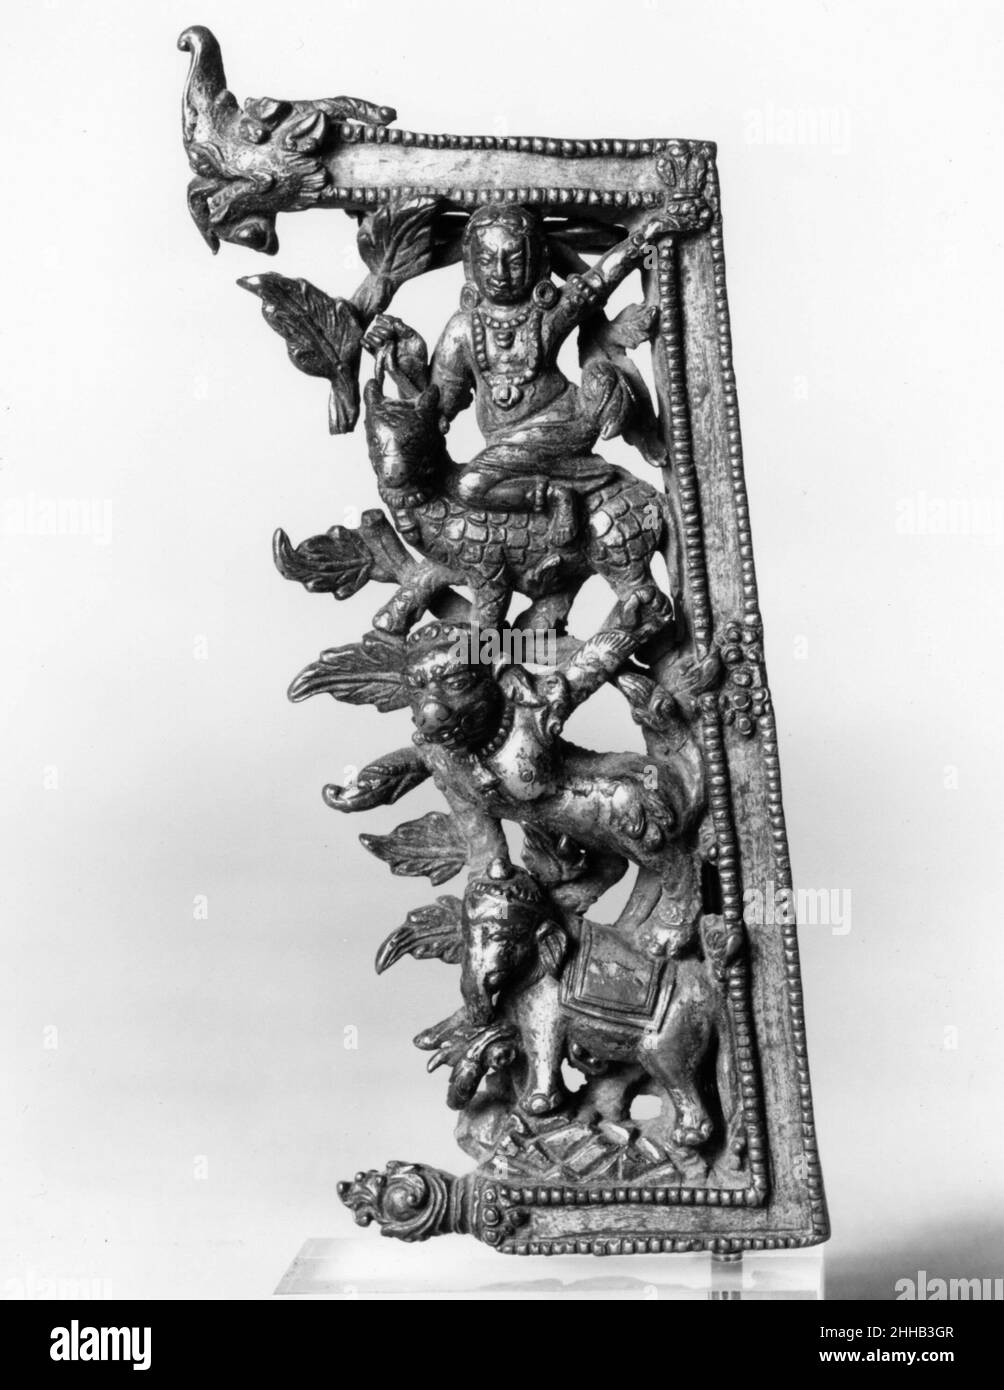 Fragment de la plaque d'appui d'une icône 16th siècle Népal (vallée de Katmandou) ce panneau de travail ouvert dépeint un mélange d'animaux fantastiques riotement placés dans le feuillage, l'un sur l'autre:un éléphant sur une montagne rocheuse, un lion debout sur son dos, au-dessus d'une créature semblable à un rhinocéros avec la tête d'un taureau, monté par un demi-god.Le cadre à perles en forme de strapone a une makara, une créature fantastique de la mer, comme son terminal.Fragment de la plaque arrière d'une icône 38346 Banque D'Images